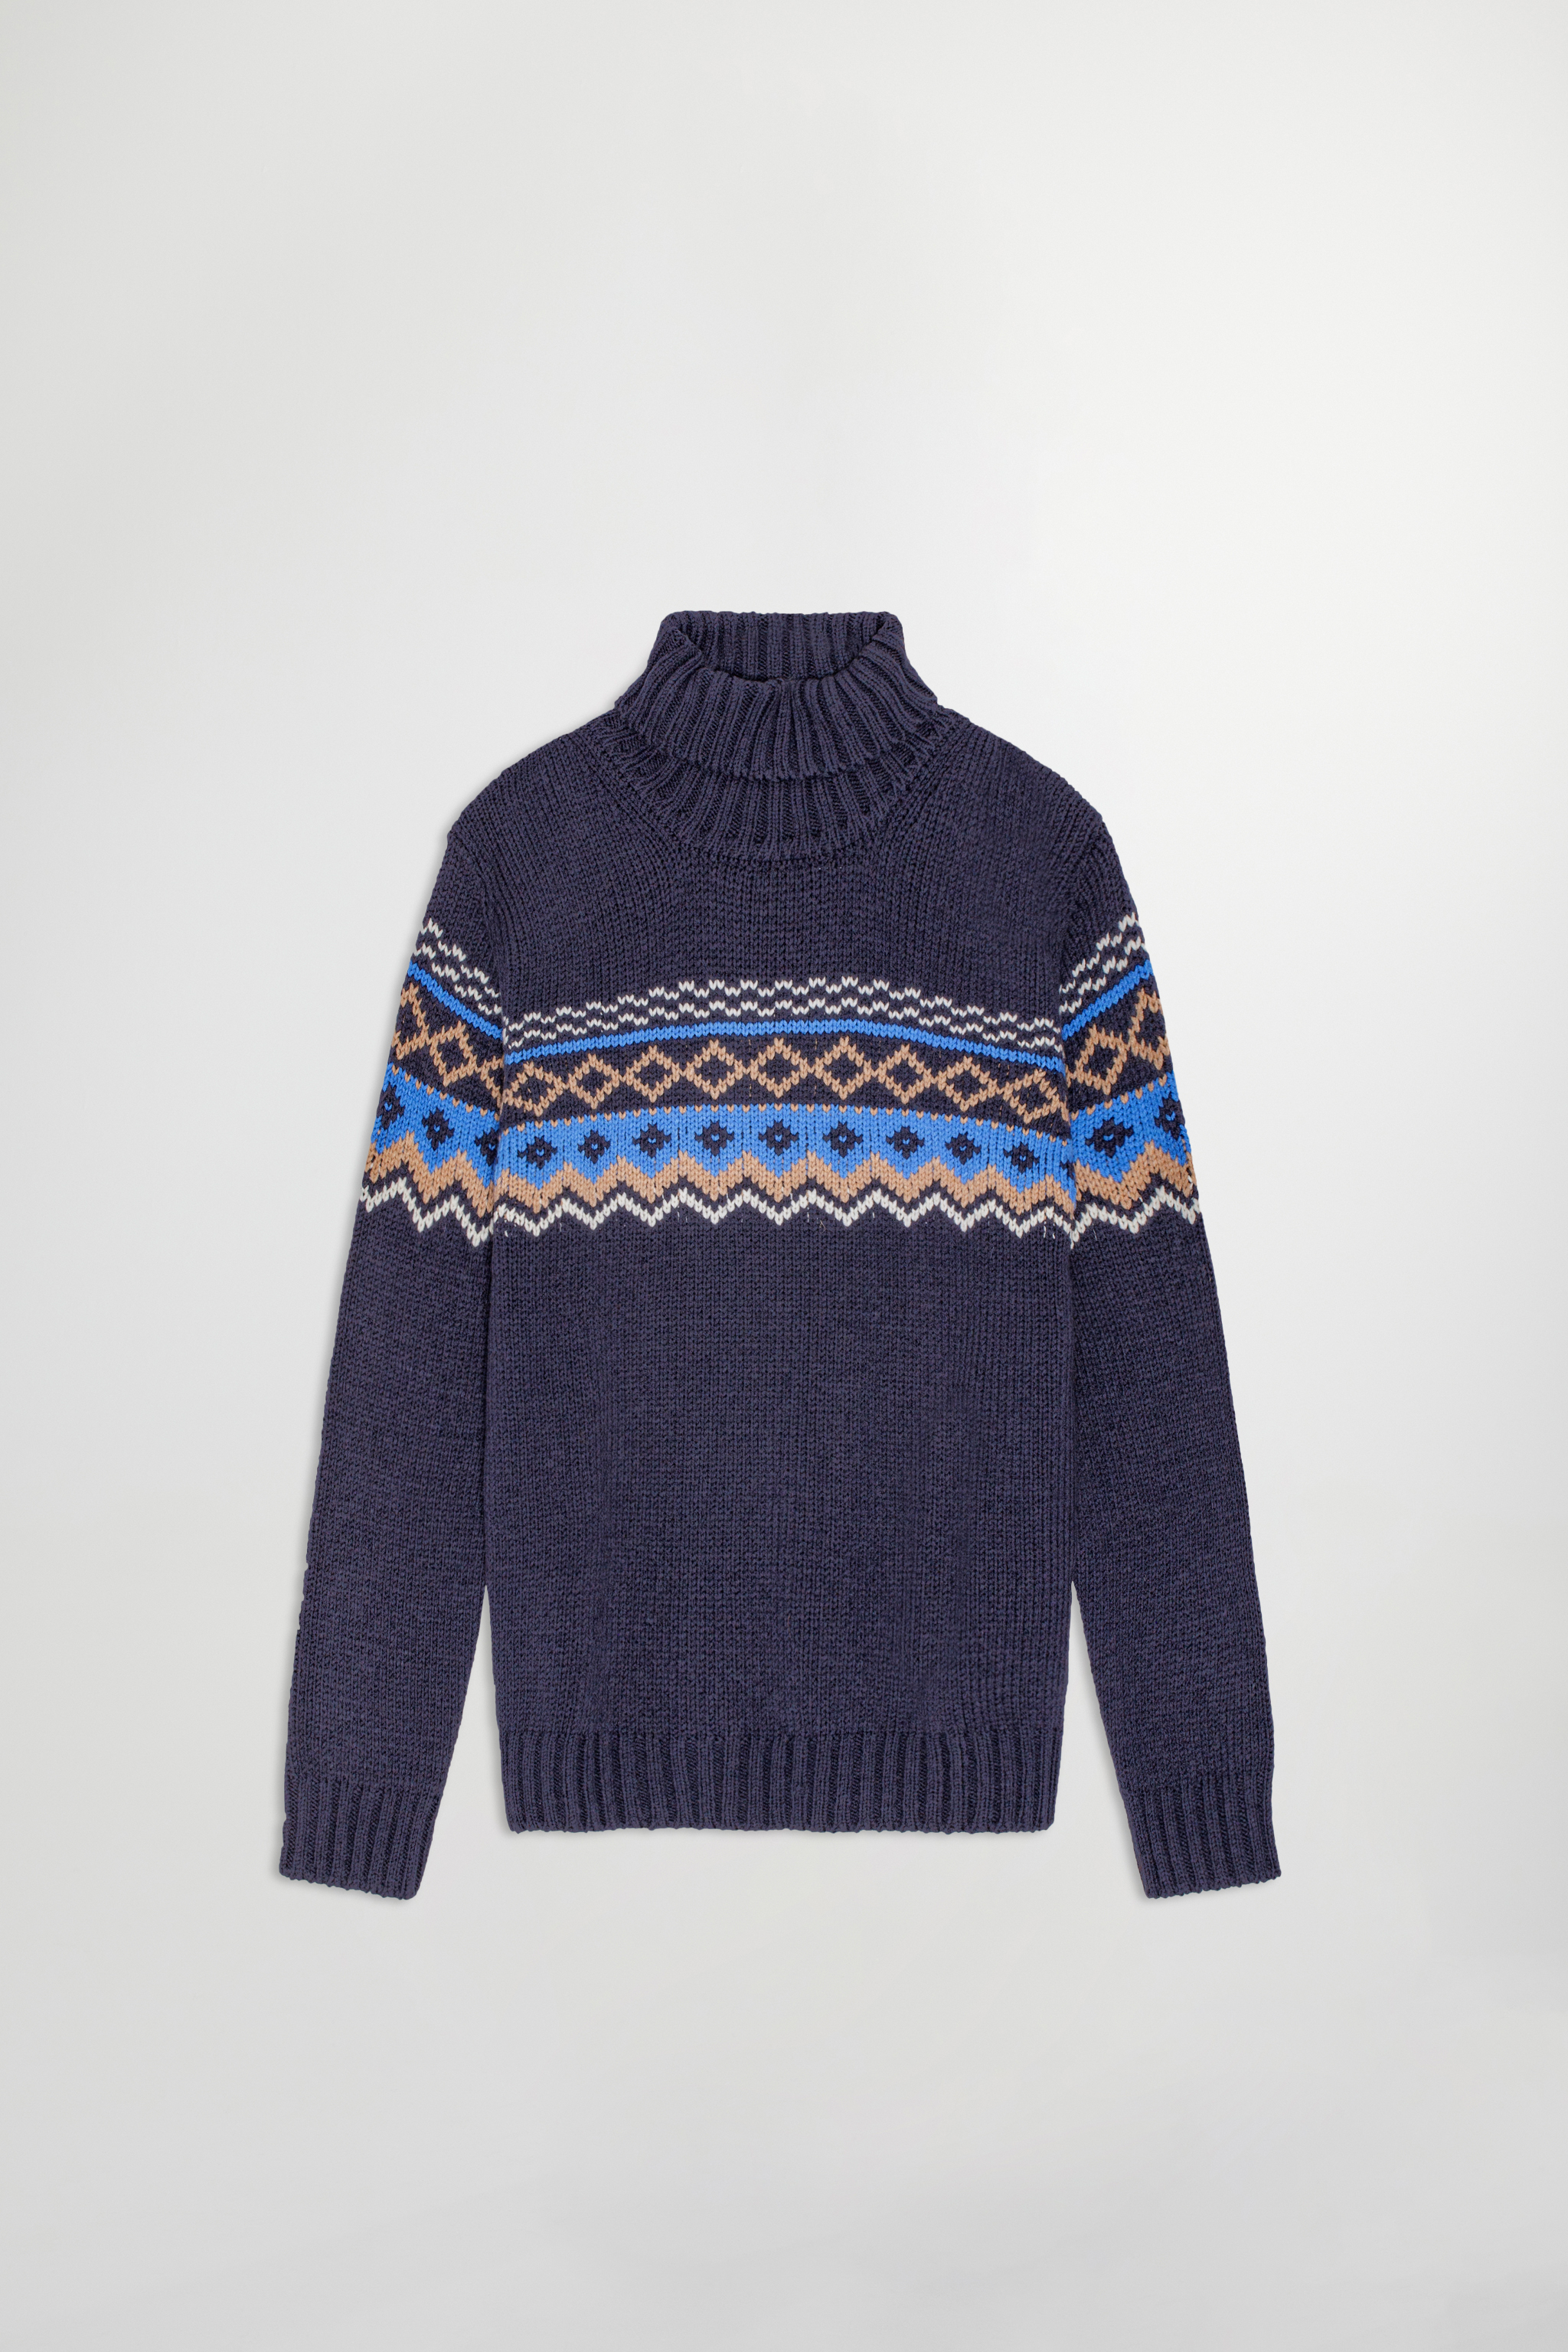 Stein 6475 Sweater | NN.07® Official Webshop